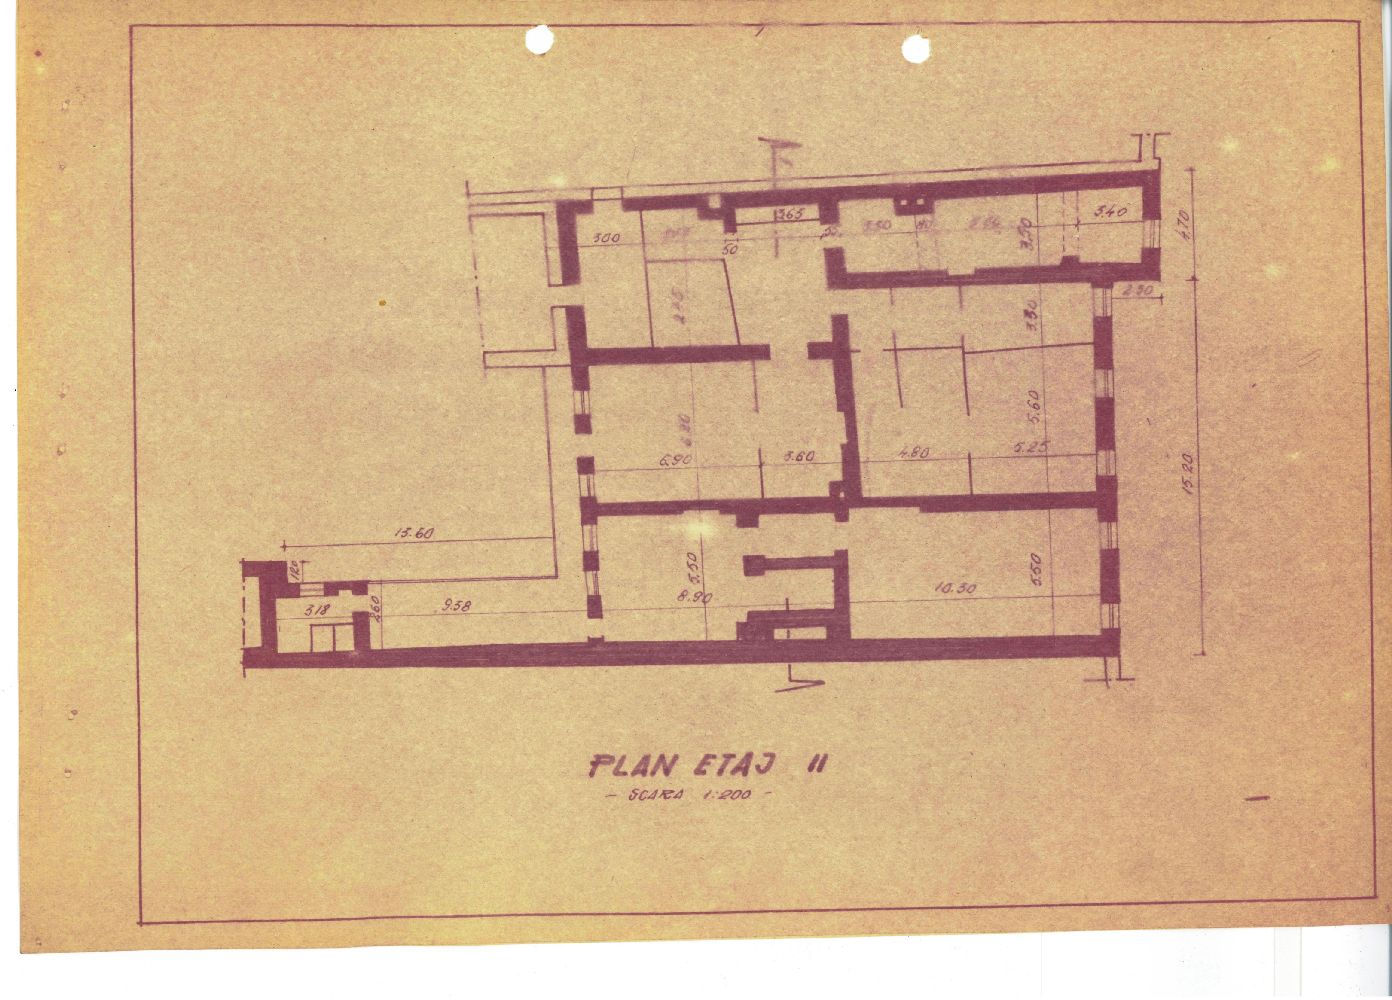 Plan etajul I, perioada interbelica